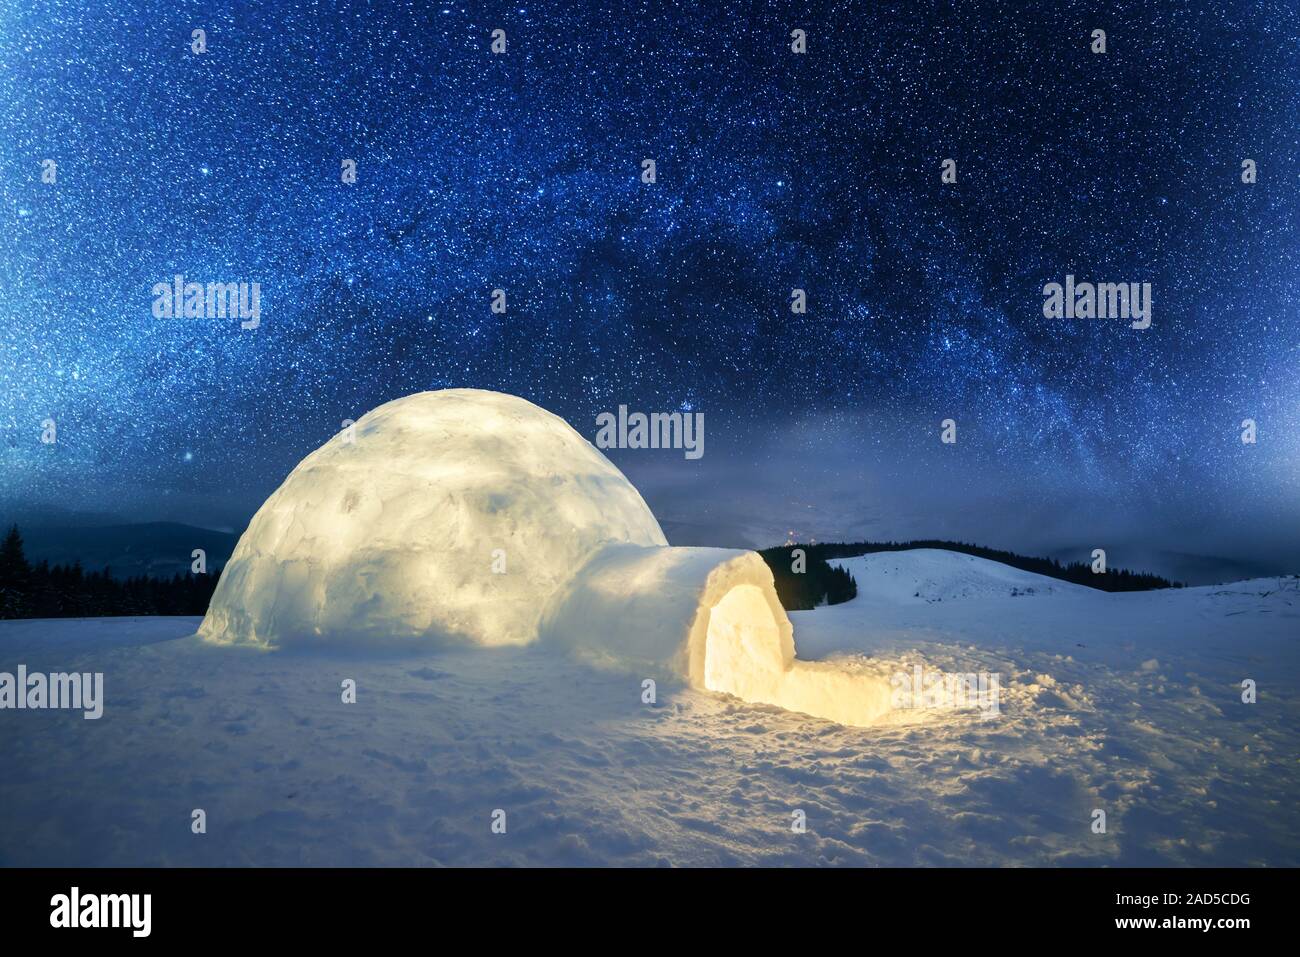 Fantastico paesaggio invernale incandescente da star light. Scena invernale con snowy igloo e la via lattea nel cielo notturno Foto Stock